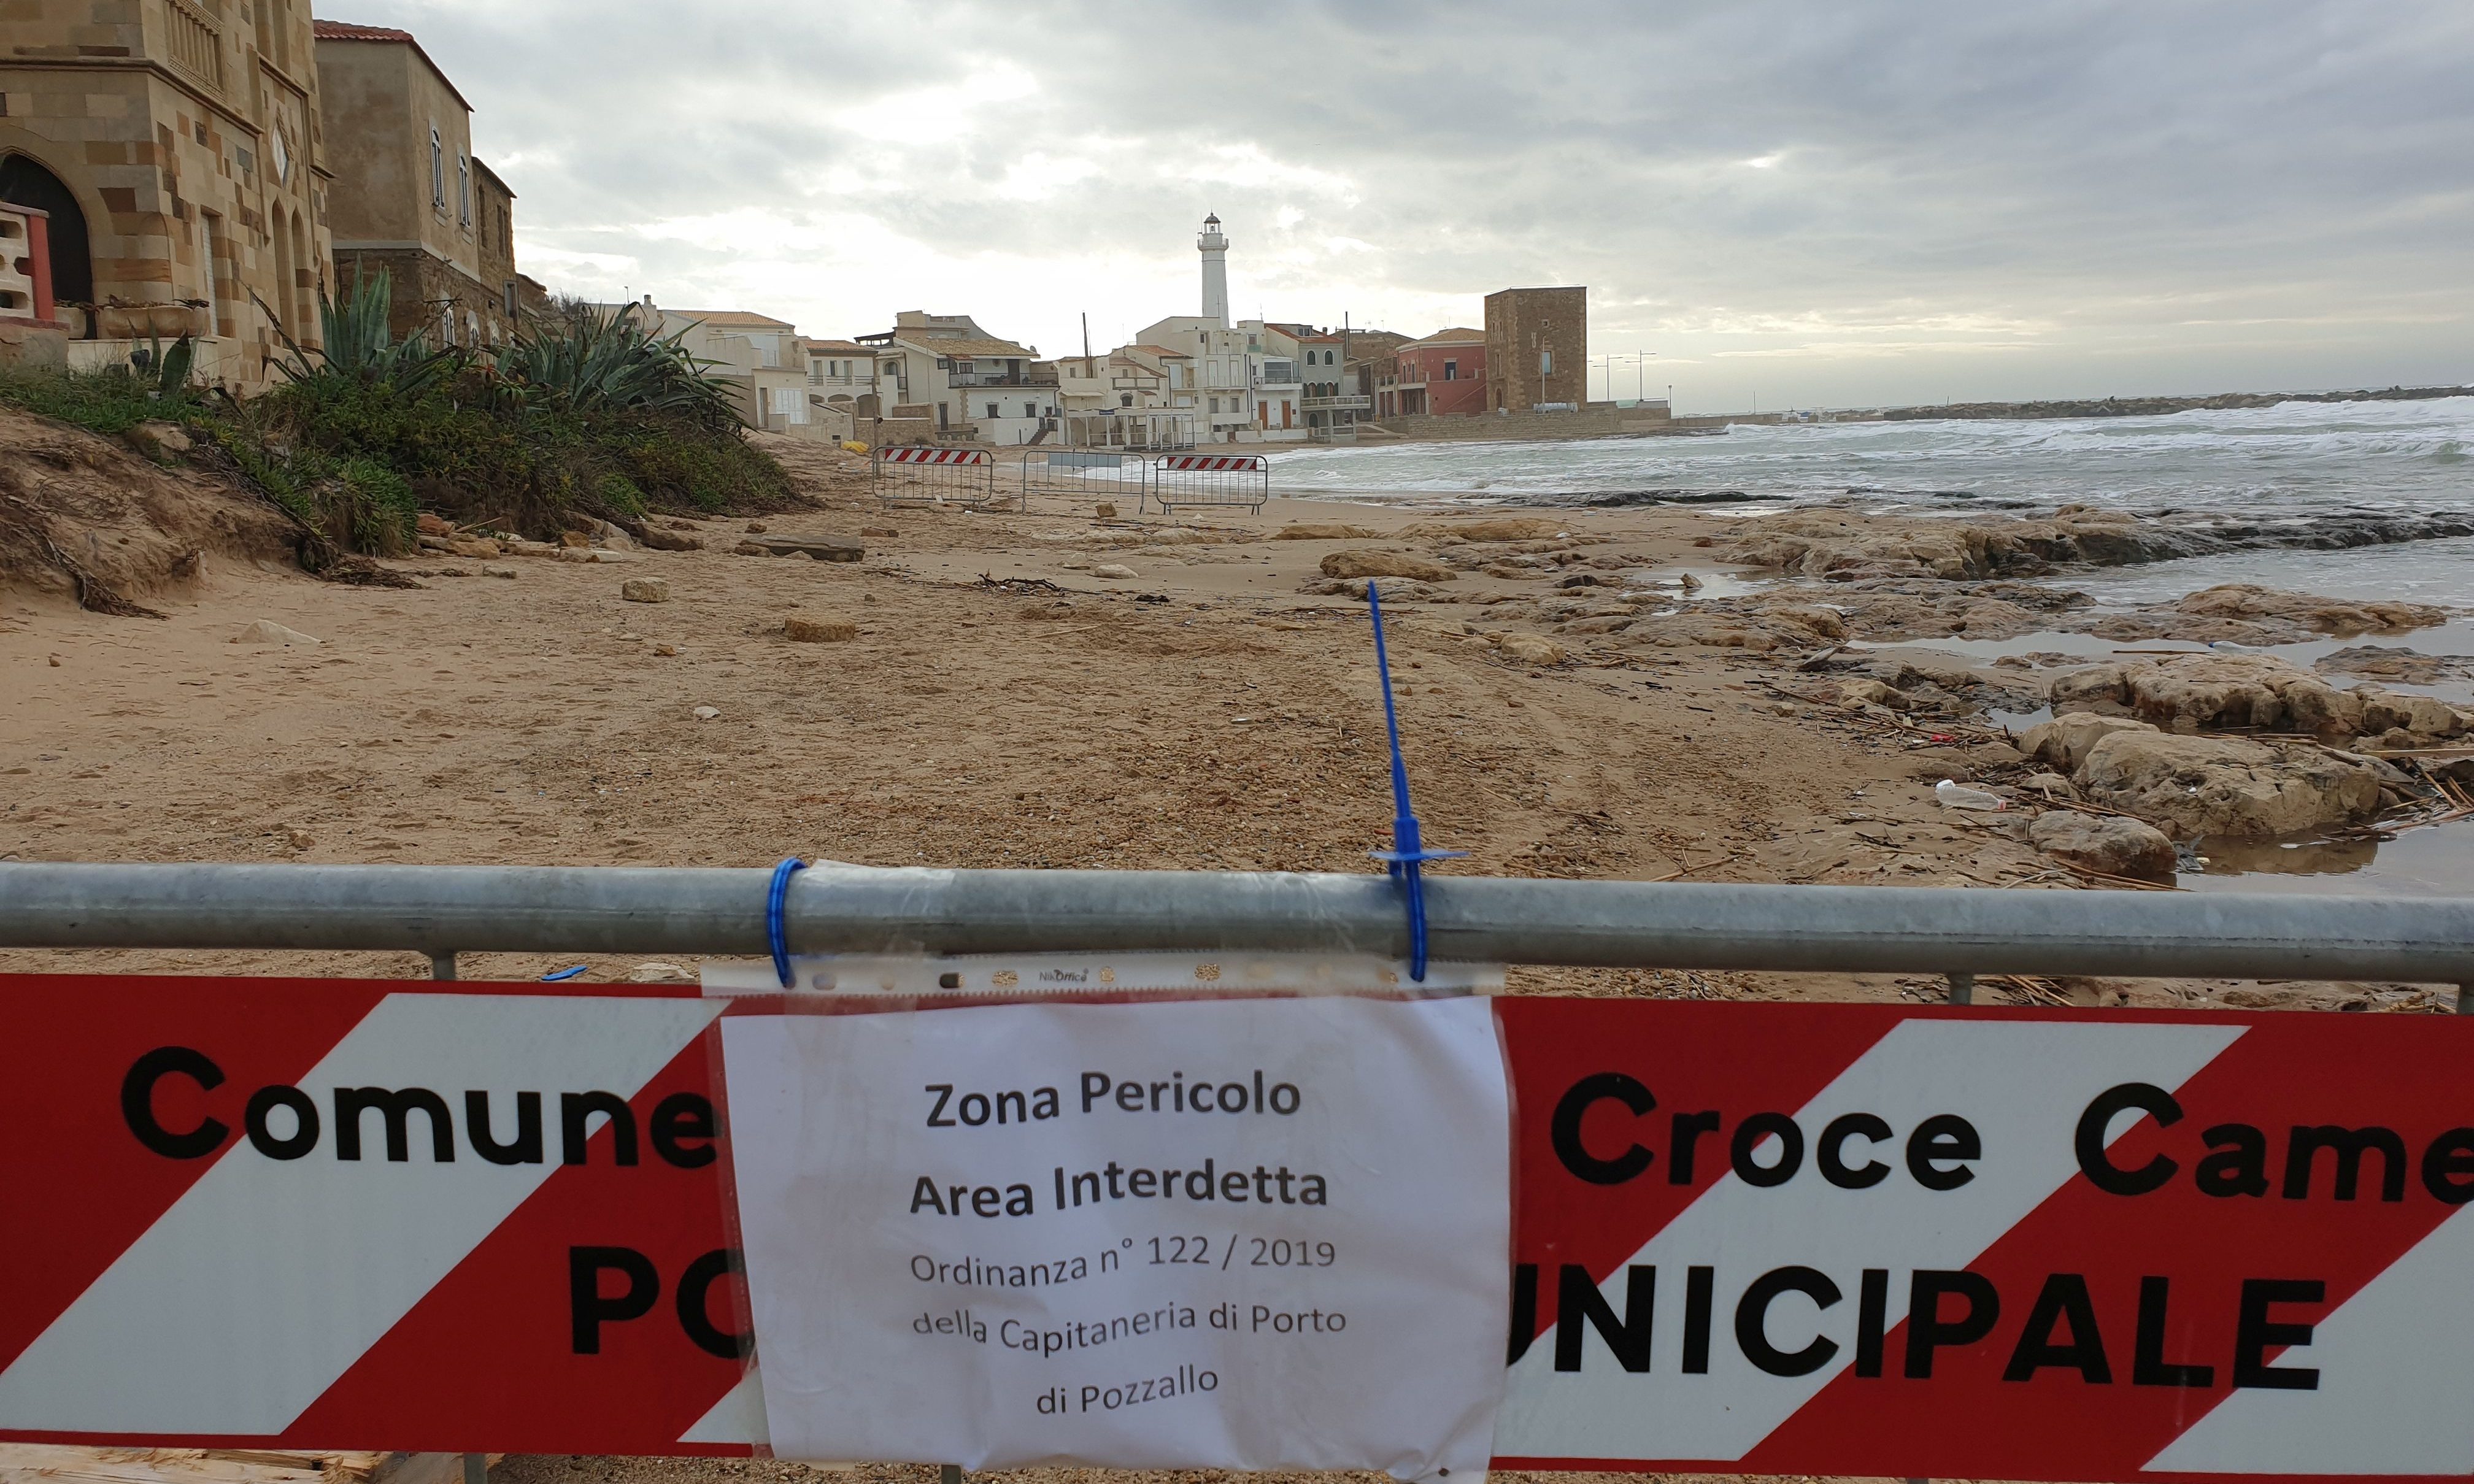  Proiettili sulla spiaggia di P.Secca: interdetta una zona dell’arenile